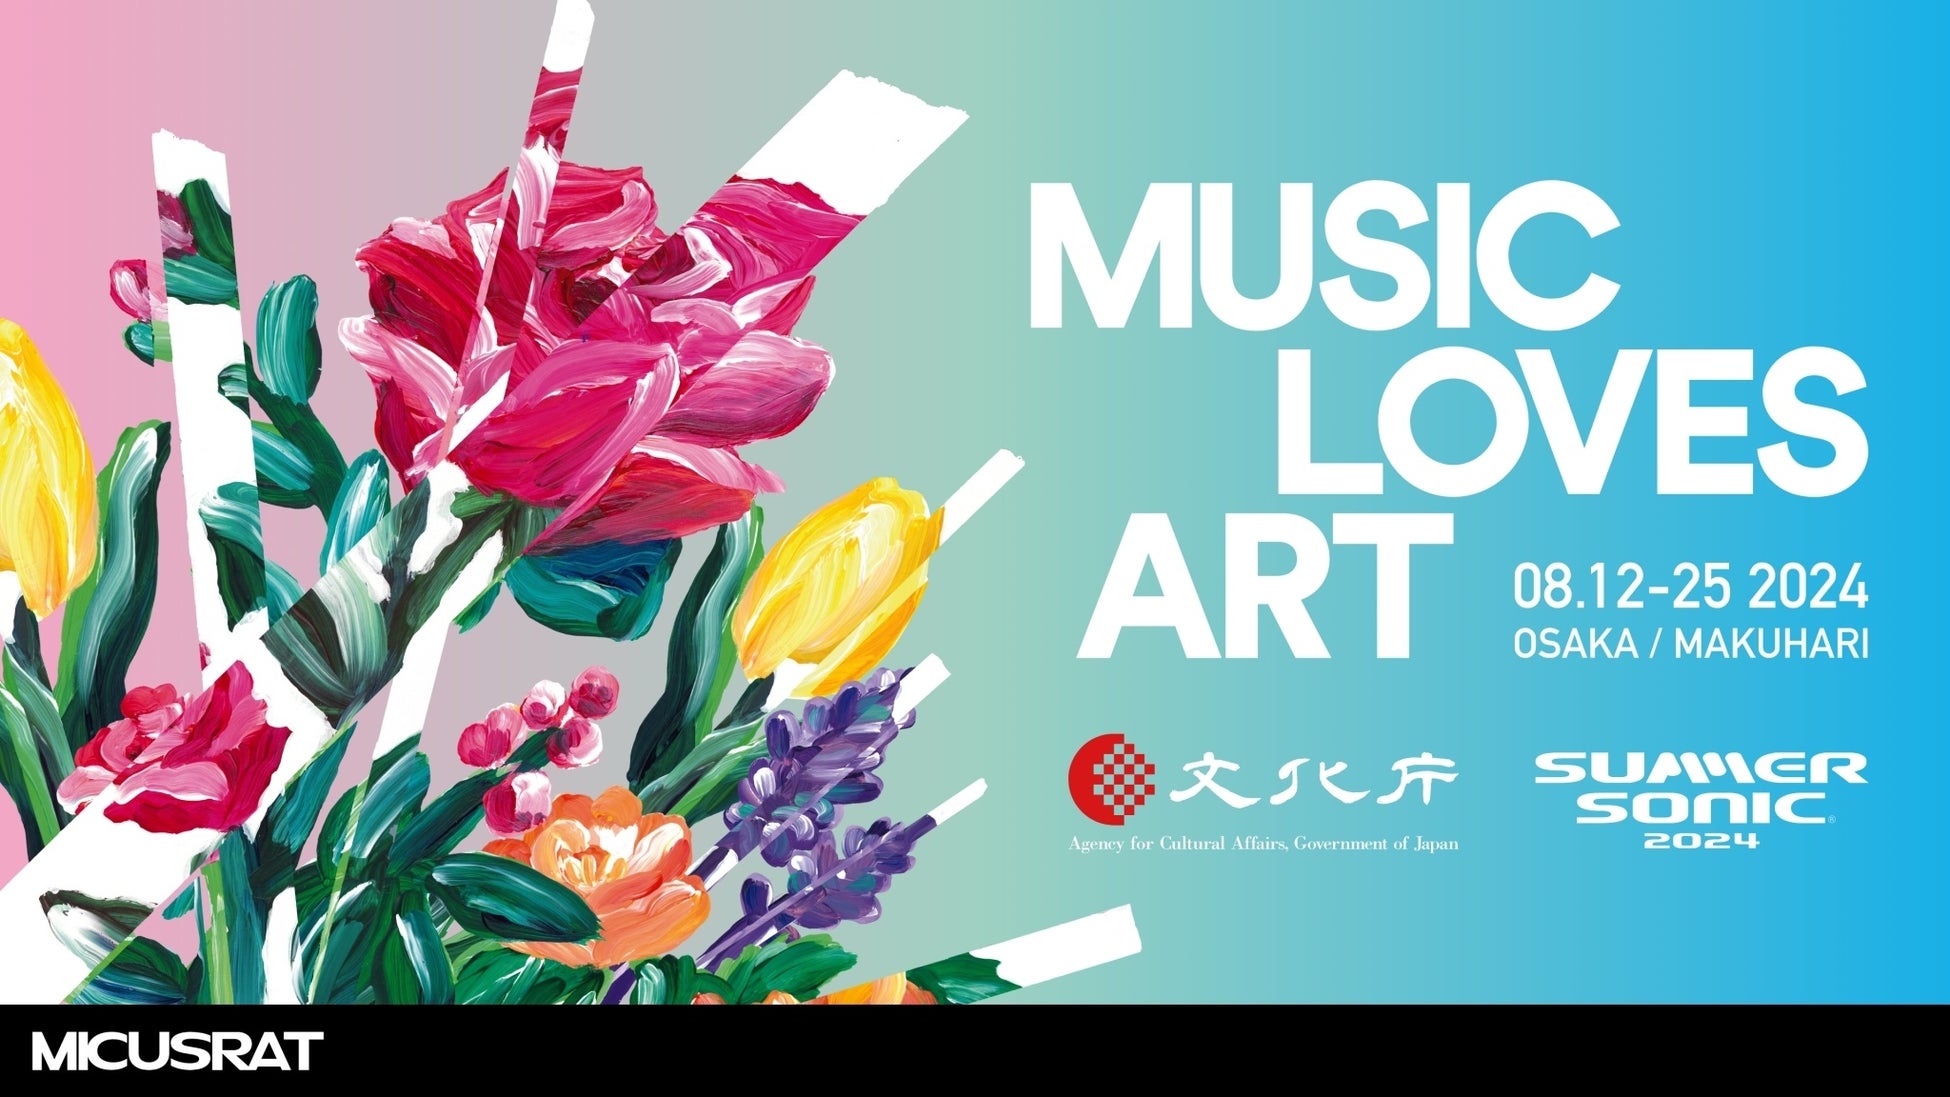 〈ギークピクチュアズ総合企画・制作〉音楽とアートの融合によるプロジェクト「MUSIC LOVES ART 2024 -MICUSRAT-」大阪開催決定！